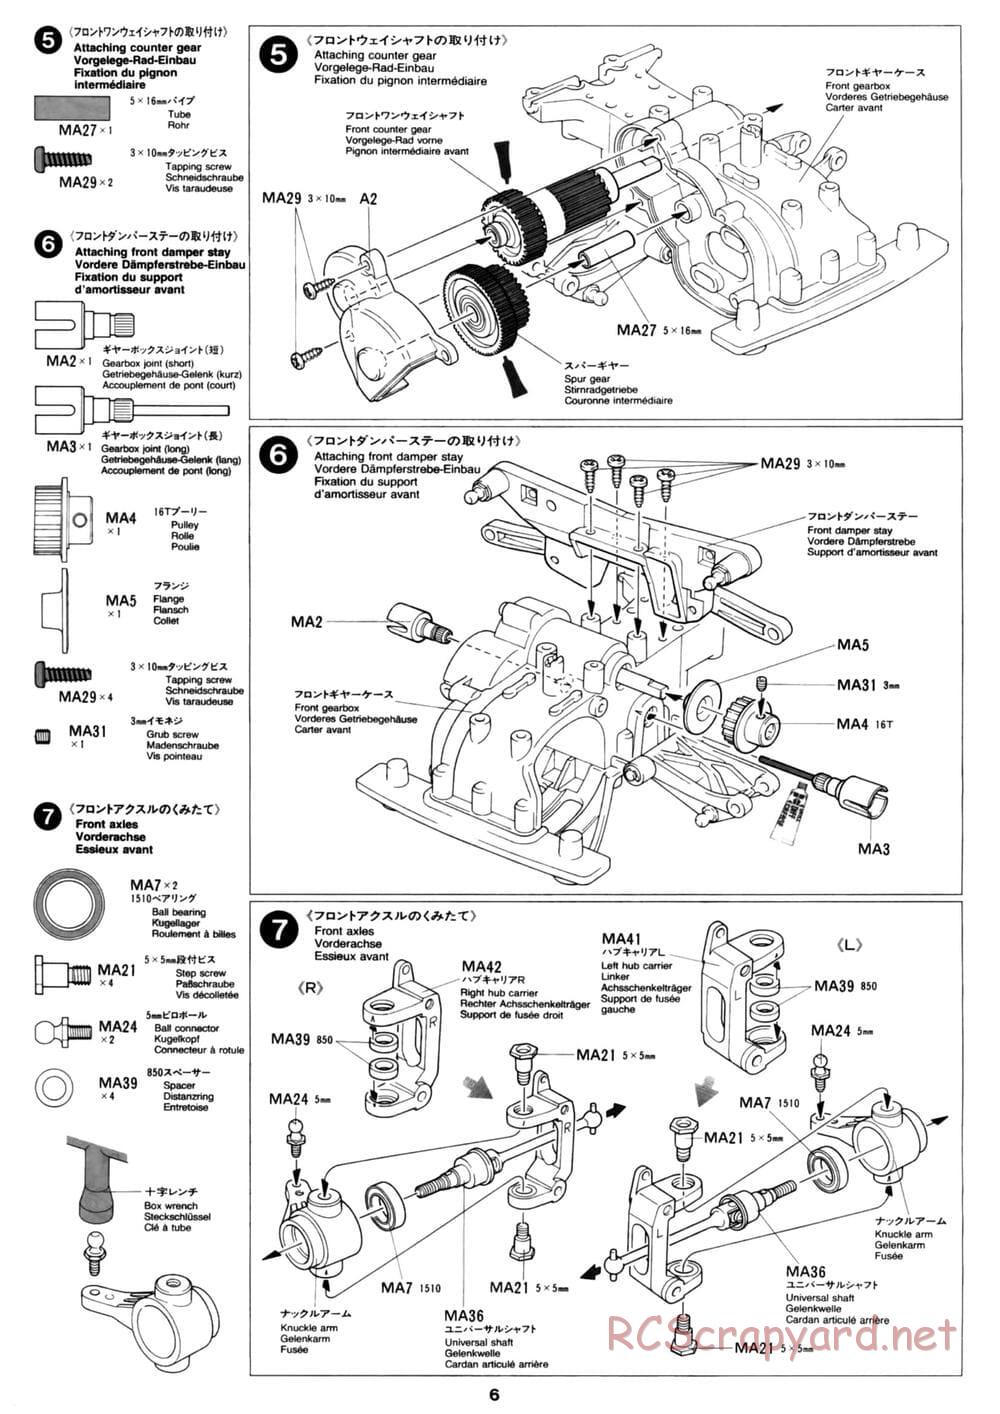 Tamiya - David Jun TA03F Pro Chassis - Manual - Page 6